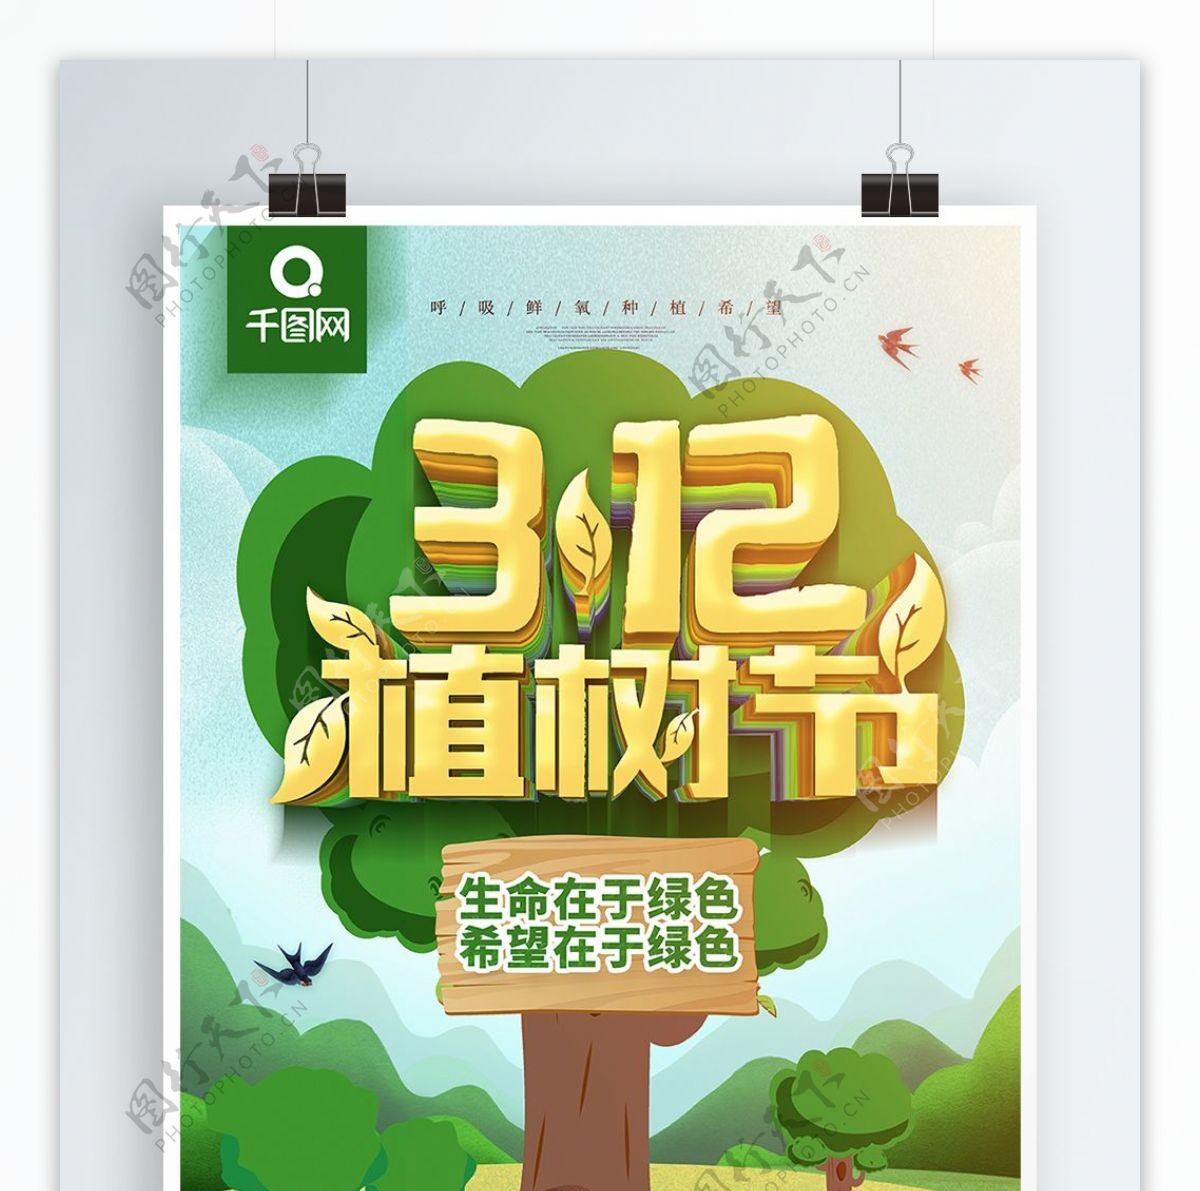 原创手绘风312植树节宣传海报